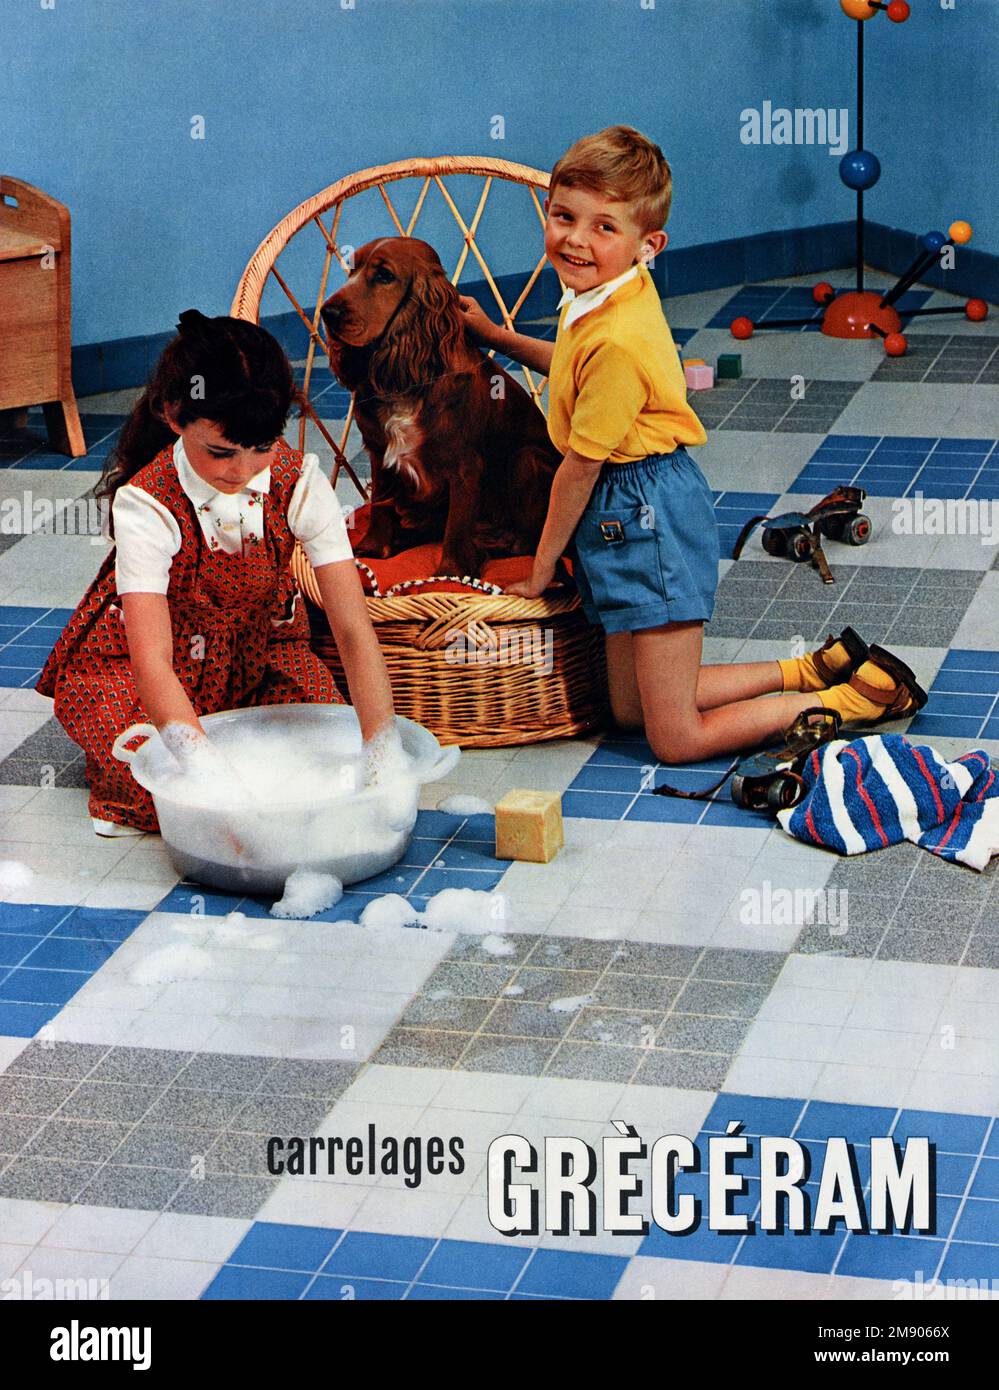 Publicité pour 1950s carreaux de sol Greceram avec enfants et chien d'Espagne en 1950s intérieur. Publicité, publicité, publicité ou Illustration vintage ou ancien 1957 Banque D'Images